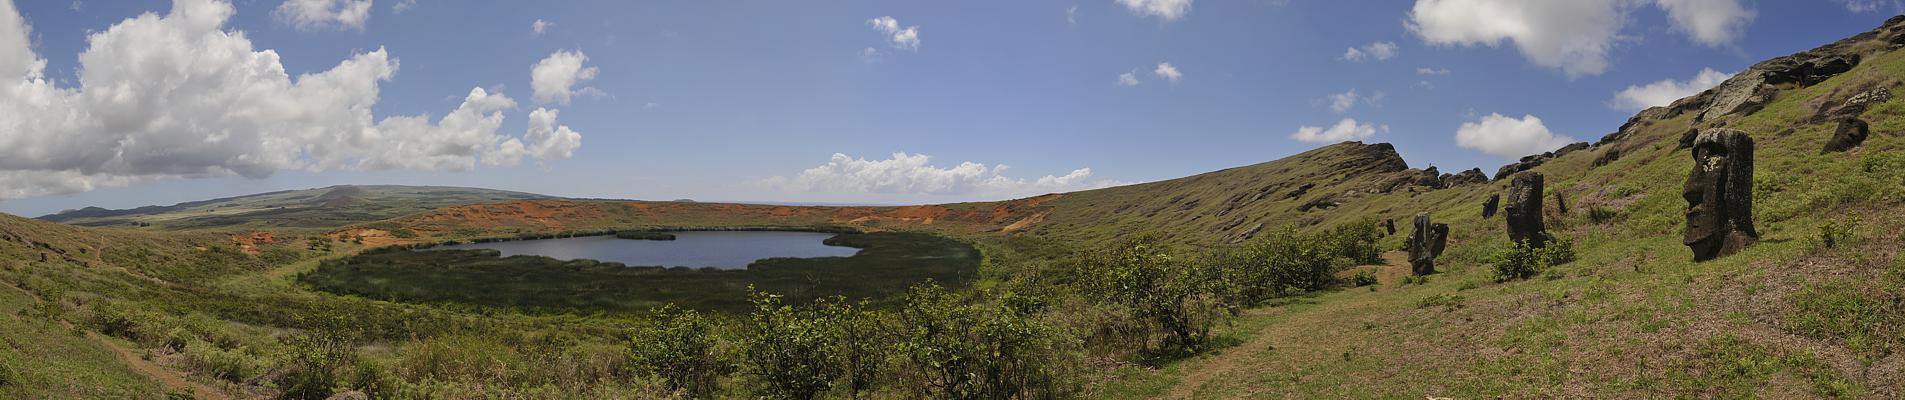 Rano Raraku - panorama